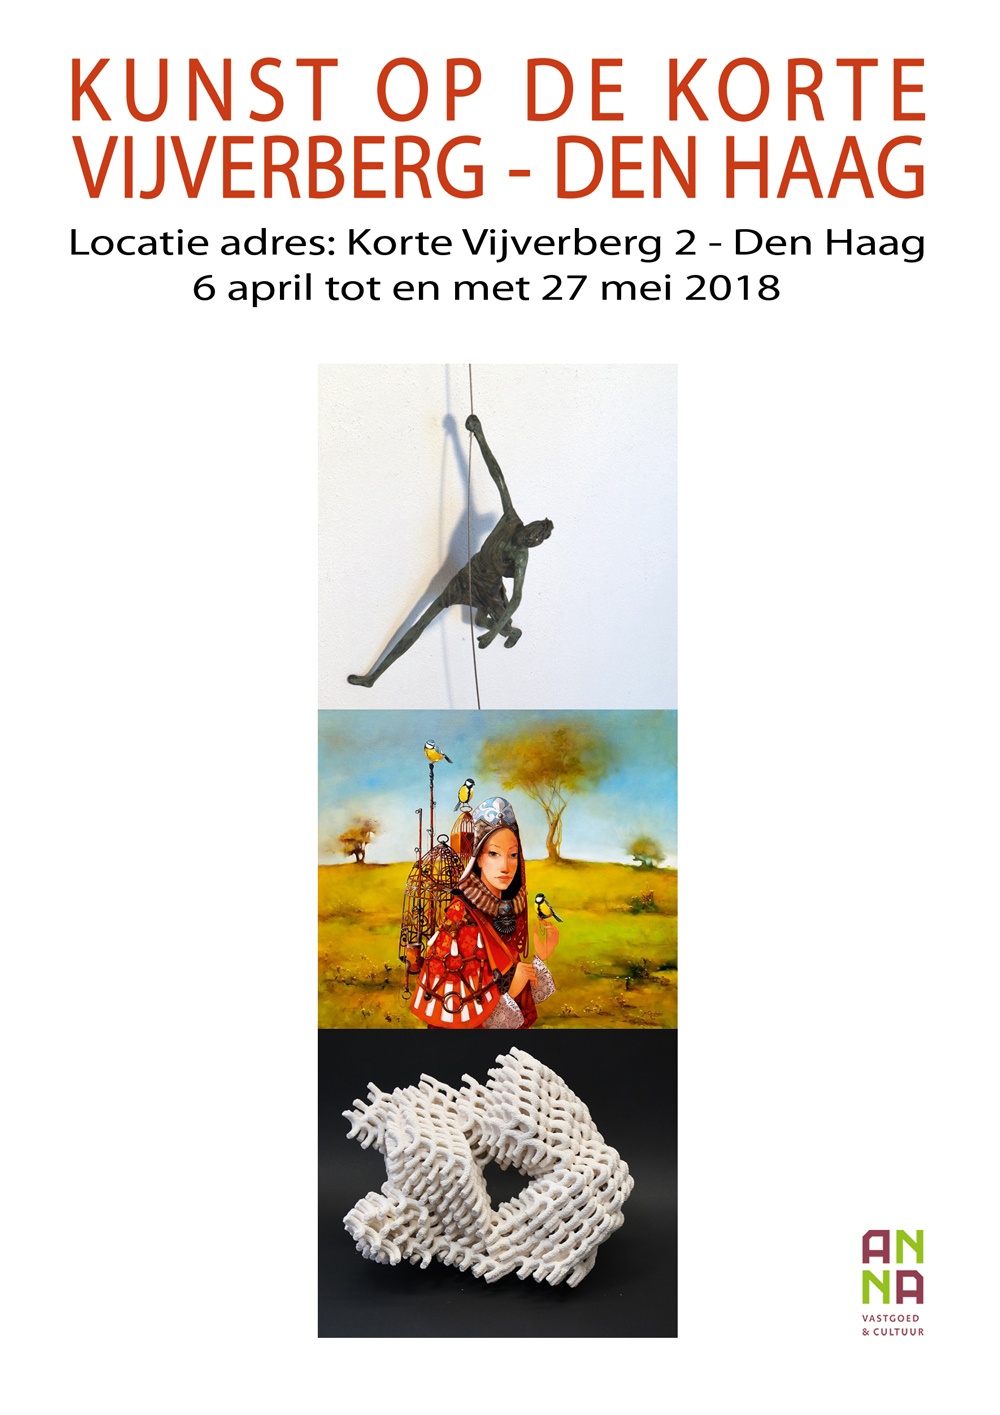 Kunst op de Korte vijverberg - Den Haag - galerie de Beeldenstorm  - Jonneke Kodde, Martin Hogeweg, Lieven d'Haese, Anke Birnie wim bals